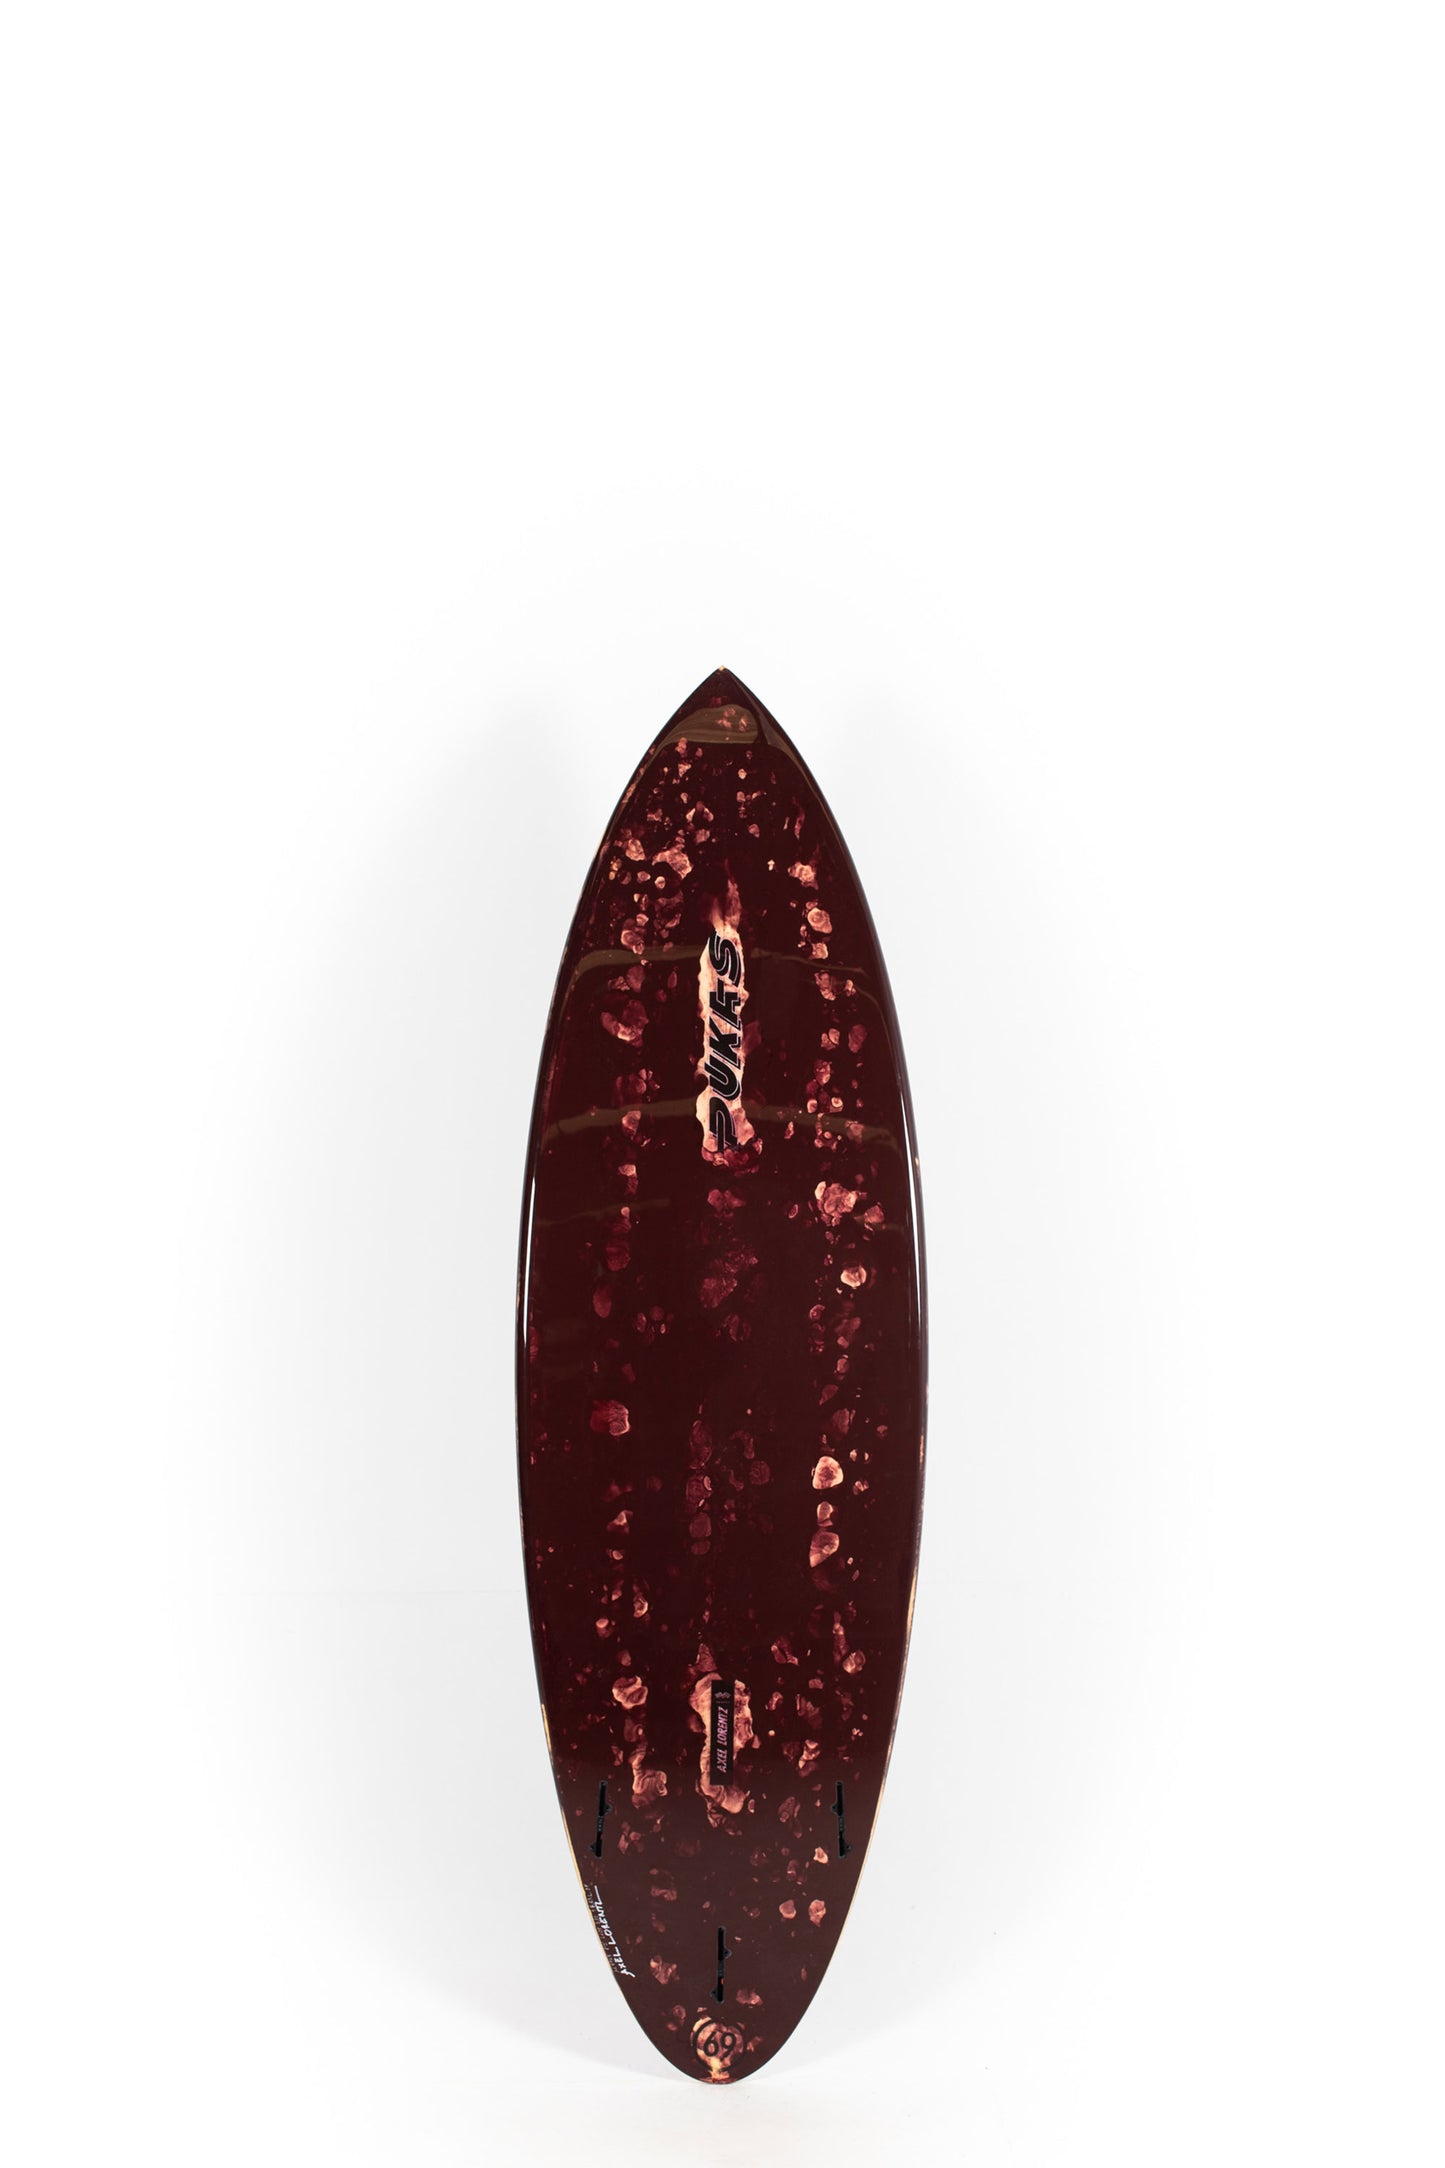 Pukas Surf Shop - Pukas Surfboard - 69ER PRO by Axel Lorentz - 6’2” x 21,25 x 2,75 - 38,83L - AX08905